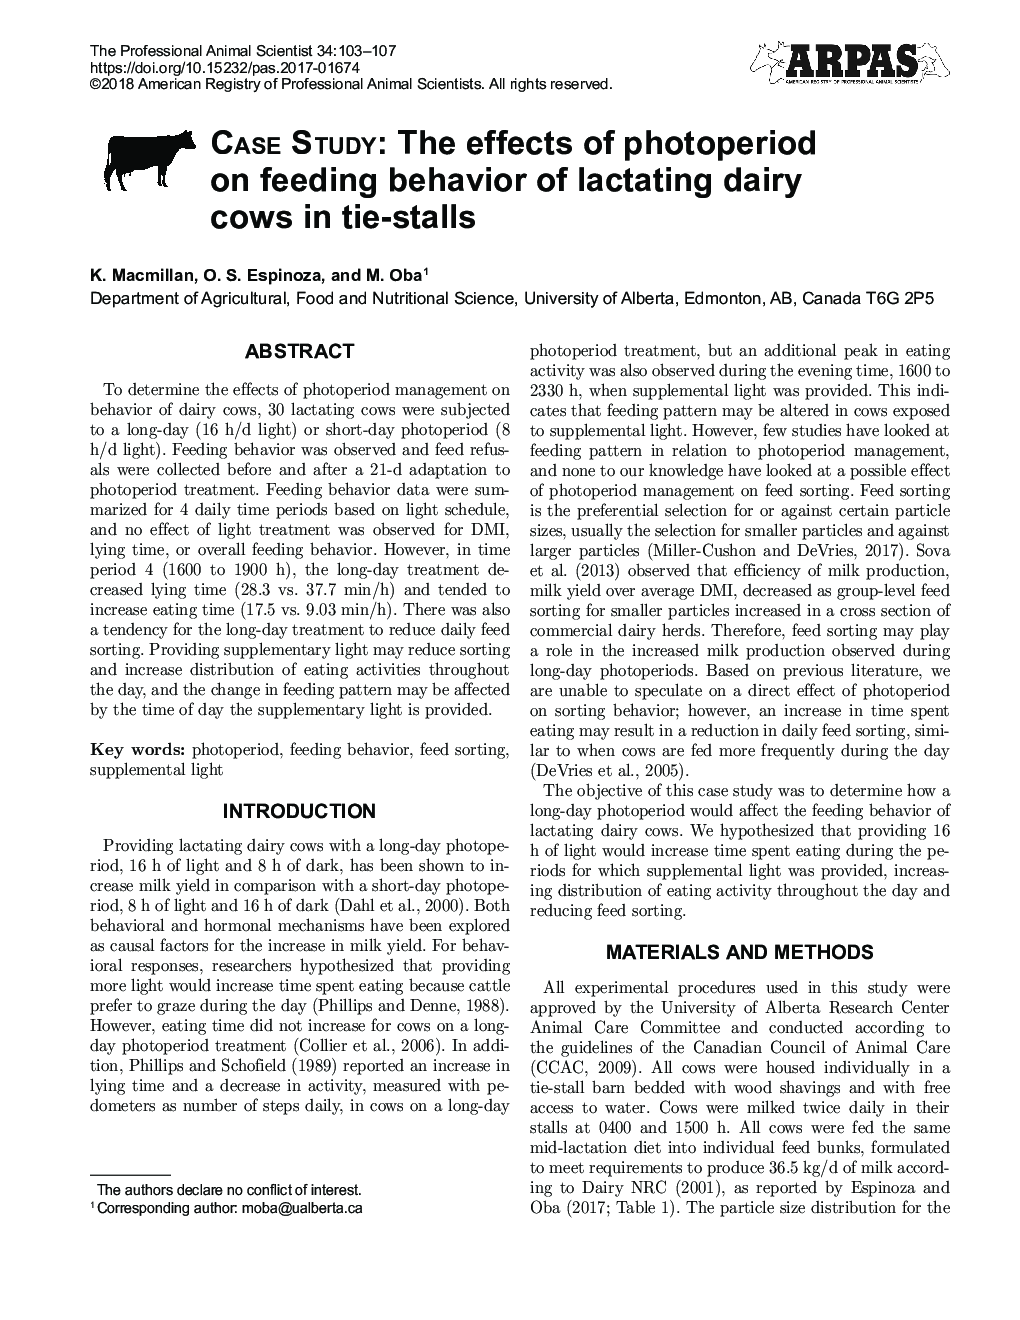 مطالعه موردی: اثرات دوره کوتاه مدت بر رفتار تغذیه گاوهای شیرده در گاوهای شیری 